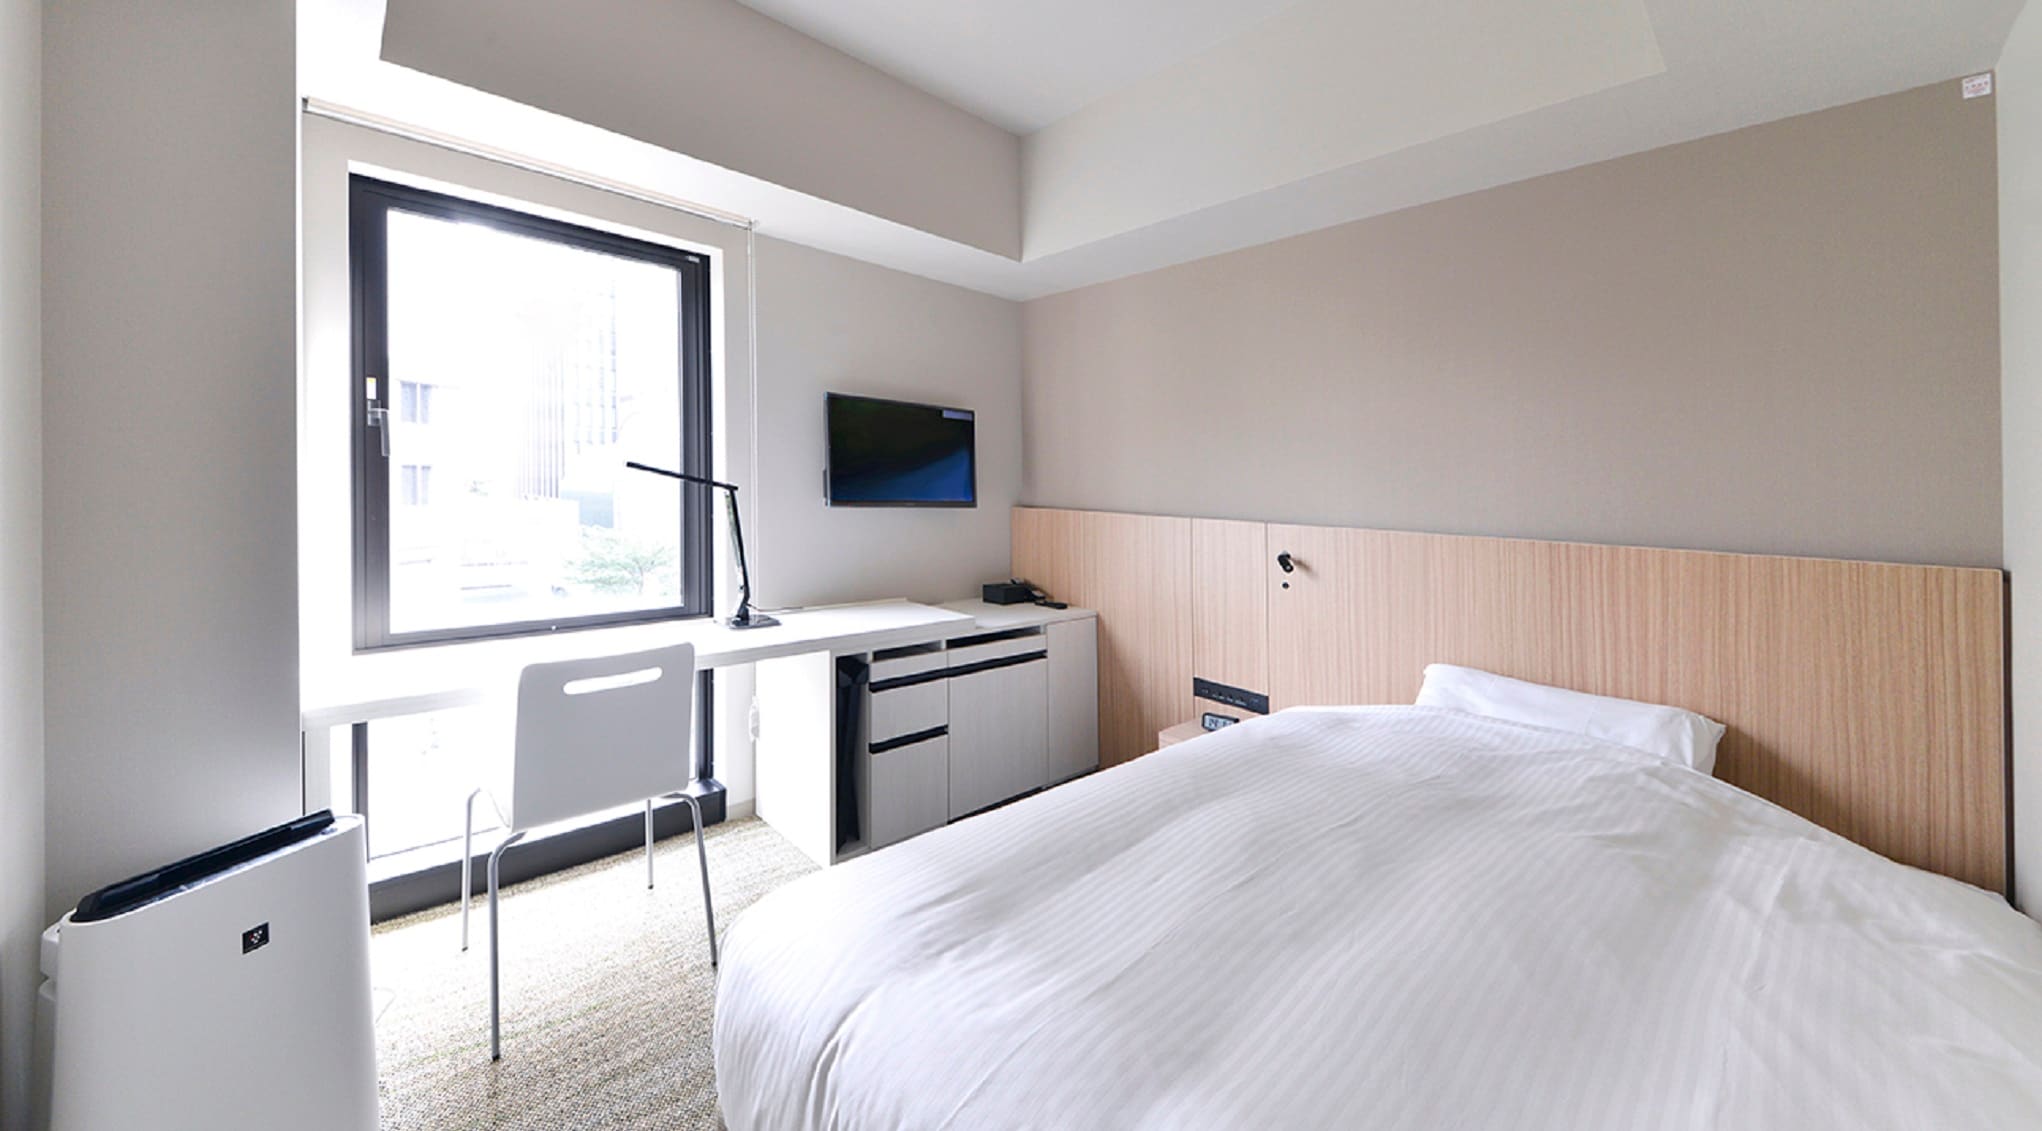 Kamar single 16㎡ Meja luas tersedia Lebar tempat tidur 140cm